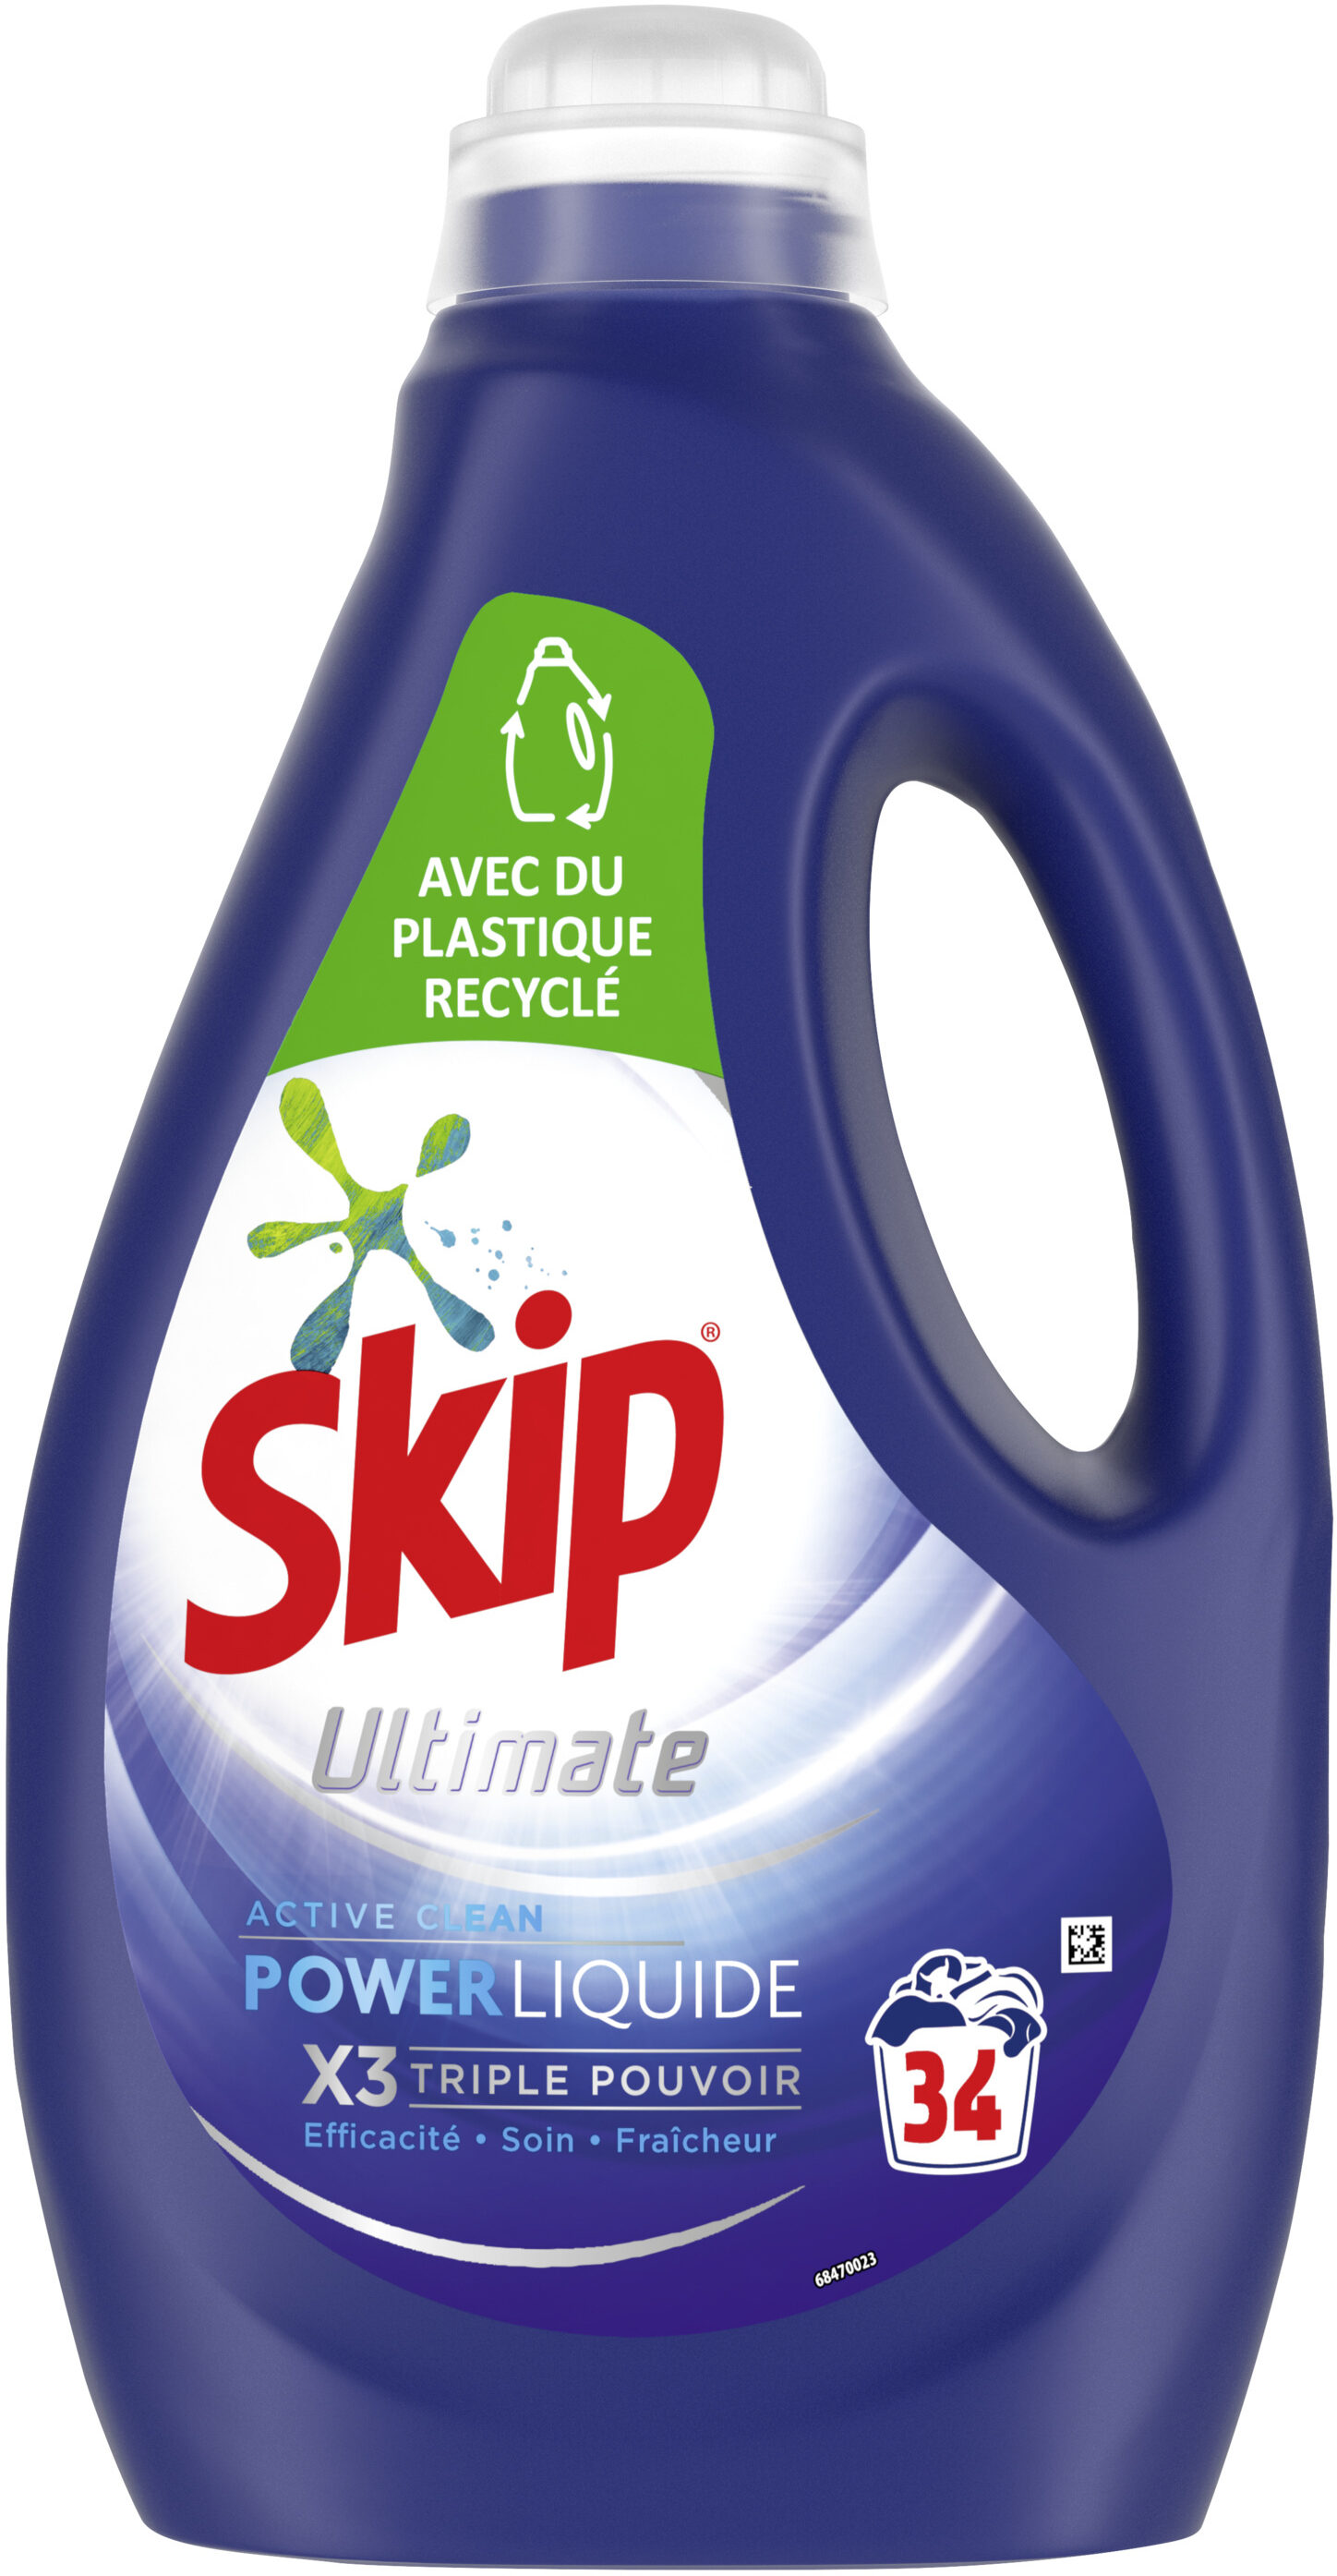 SKIP Lessive Liquide Ultimate Active Clean 1,7l - 34 Lavages - Product - fr